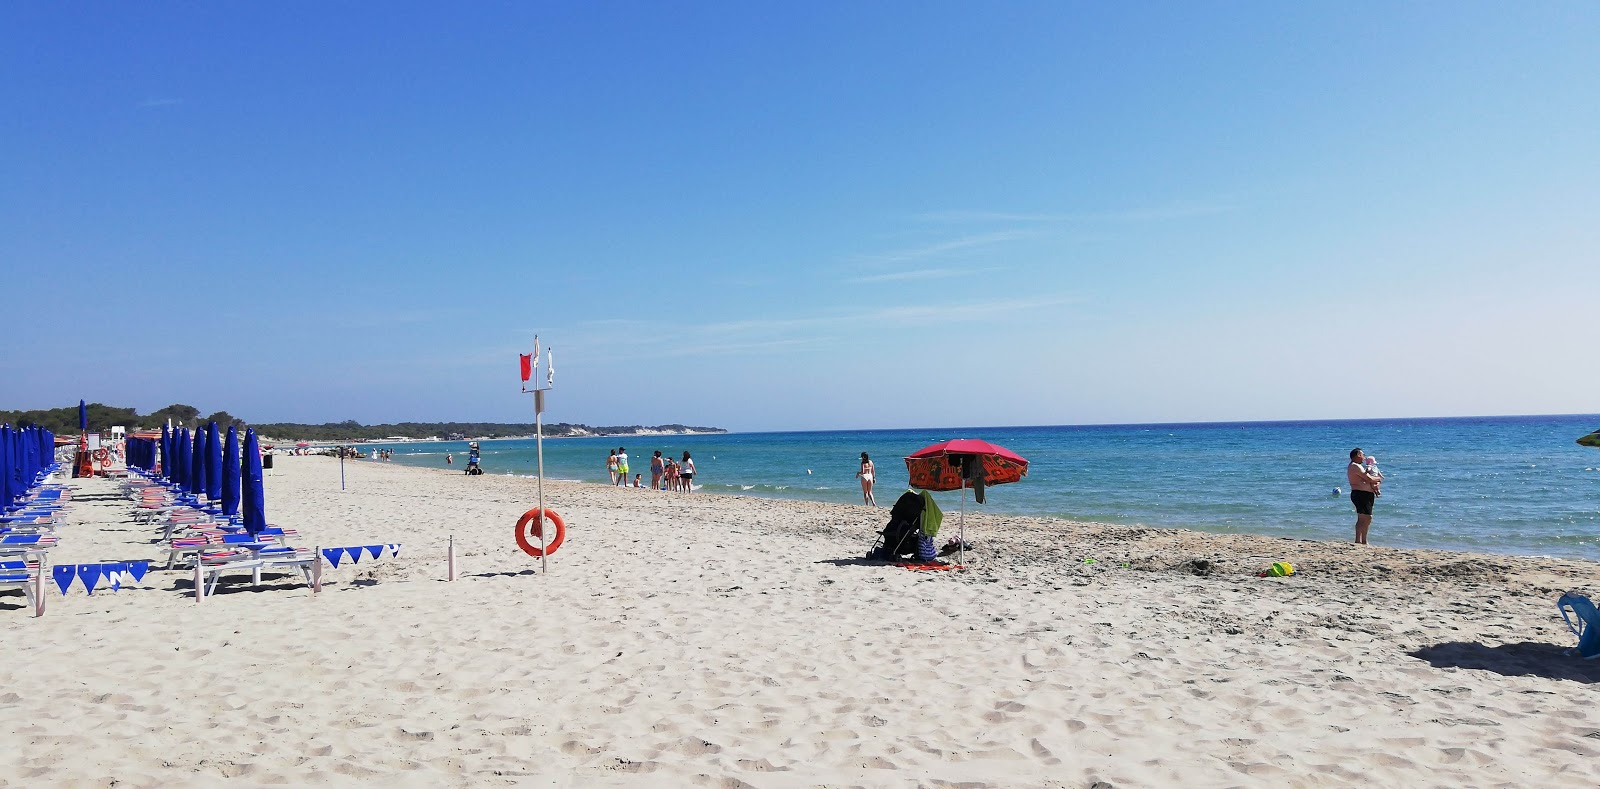 Spiaggia Alimini'in fotoğrafı plaj tatil beldesi alanı